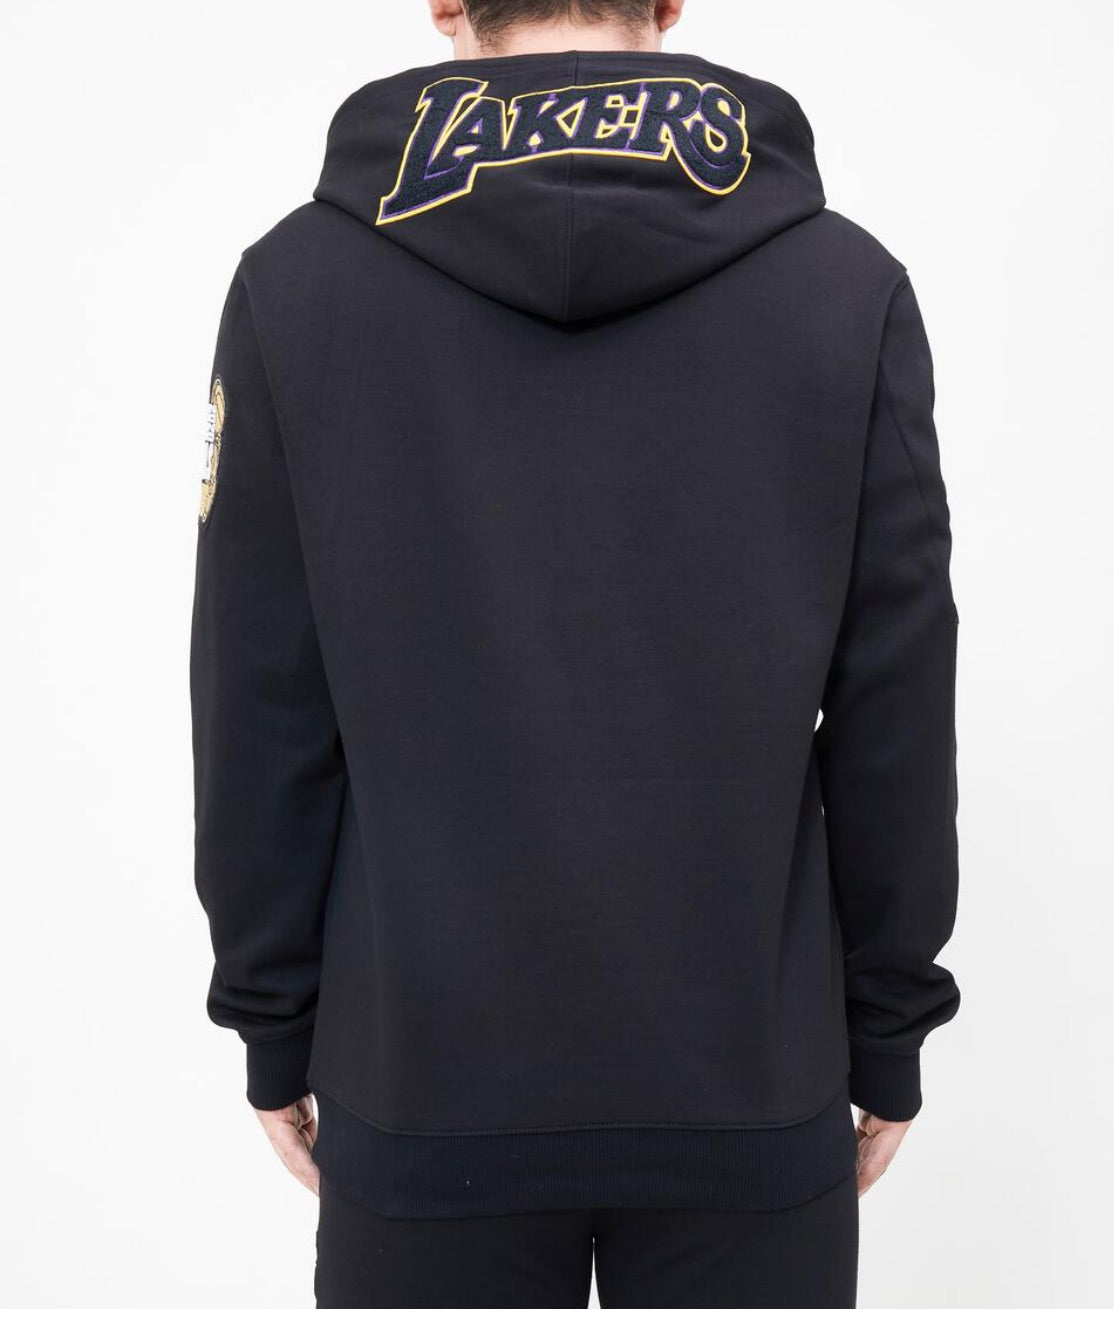 Pro Standard Lebron James LA Lakers Hooded Sweat Suit 2 Piece Set